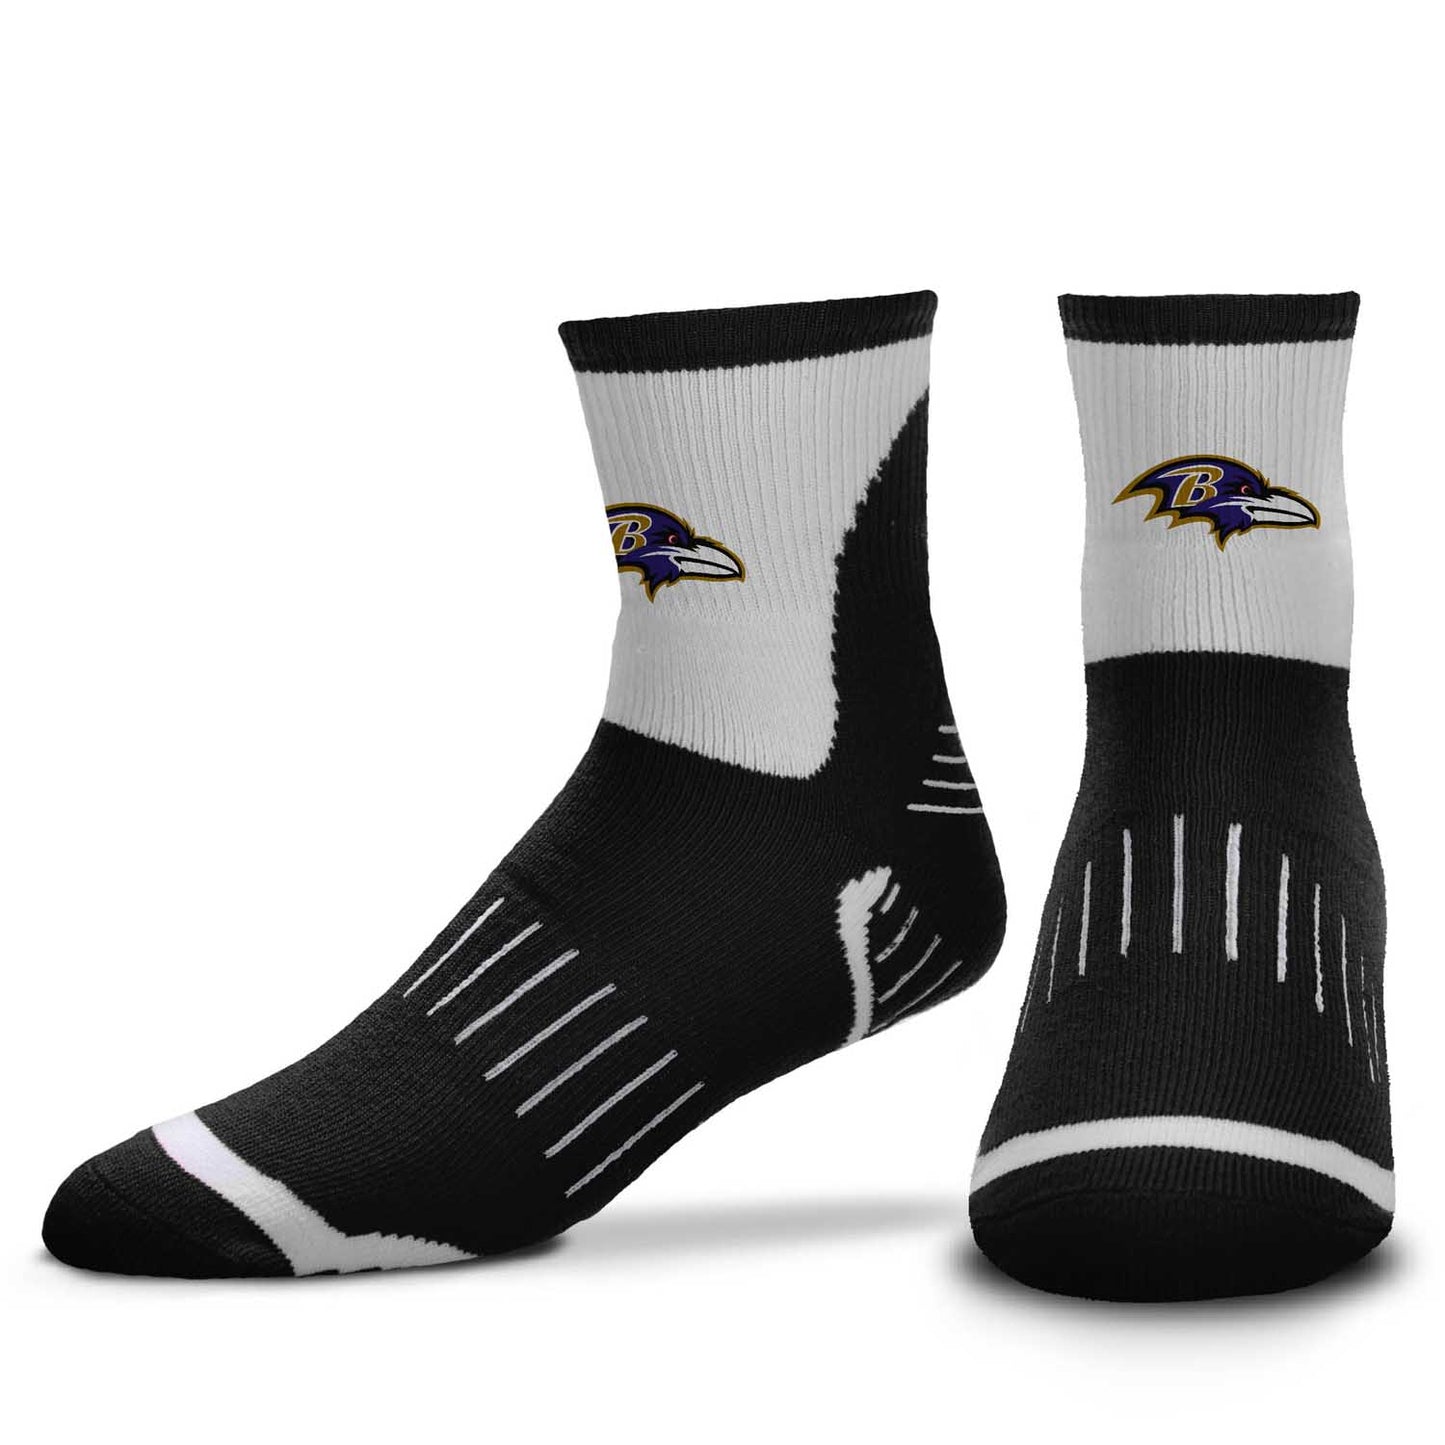 Baltimore Ravens NFL Youth Performance Quarter Length Socks - Black